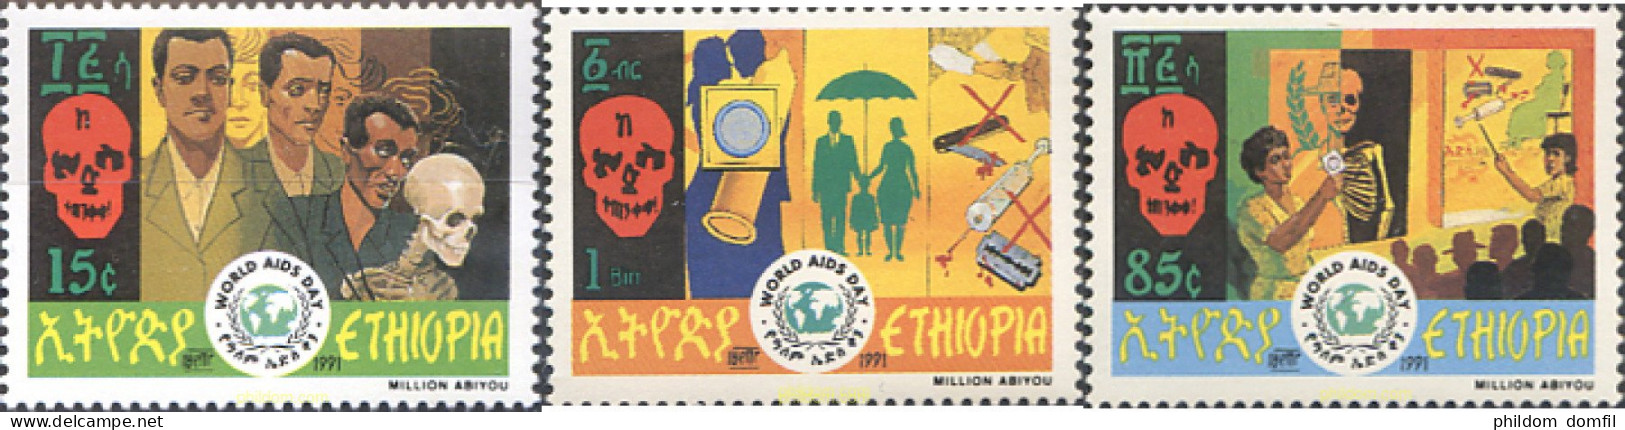 273271 MNH ETIOPIA 1991 DIA MUNDIAL DEL SIDA - Äthiopien